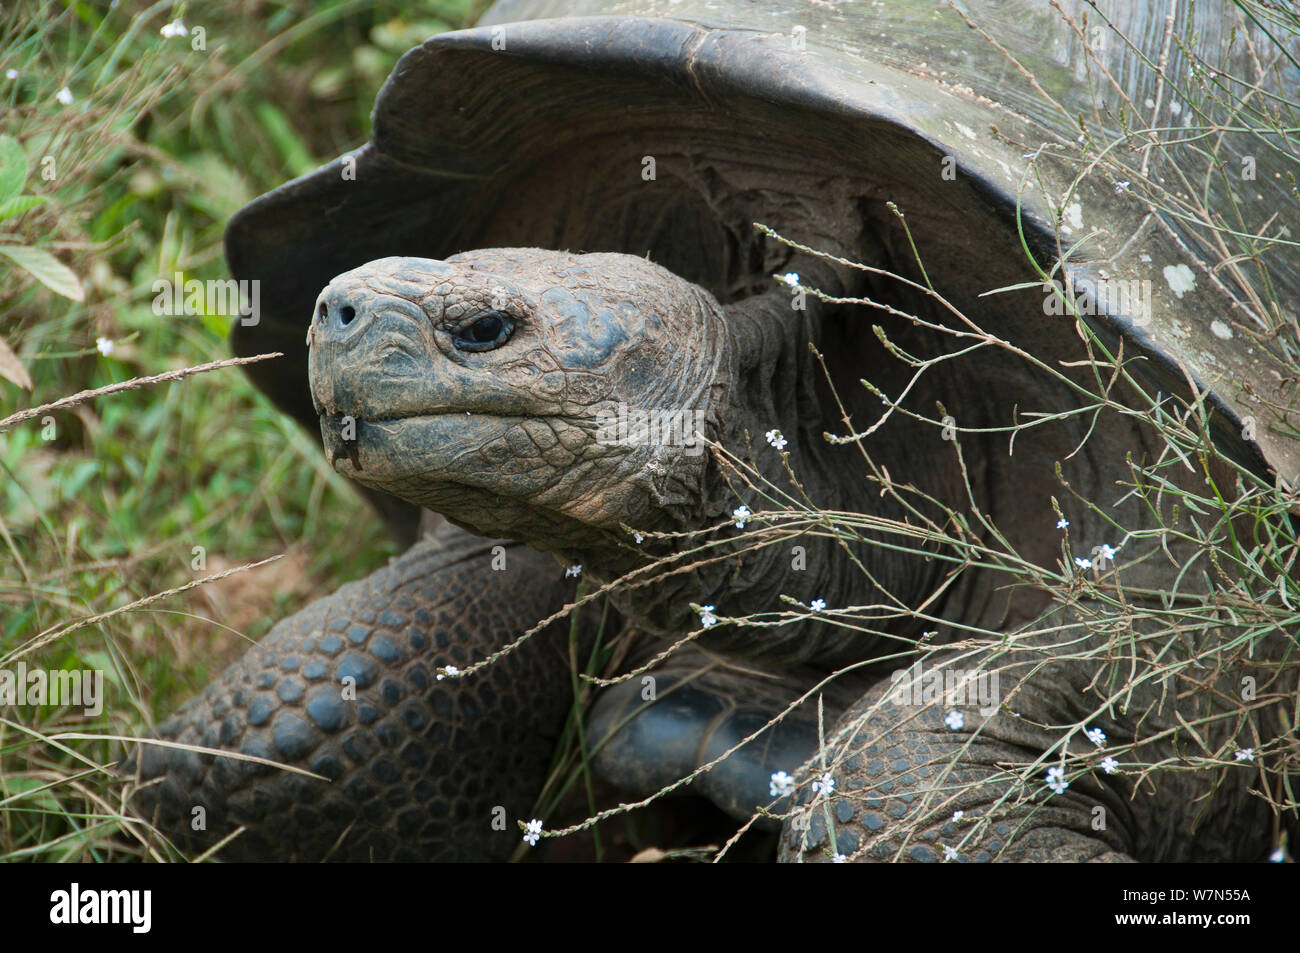 Volcan Alcedo giant tortoises (Chelonoidis nigra vandenburghi) Isabela island, Galapagos Stock Photo